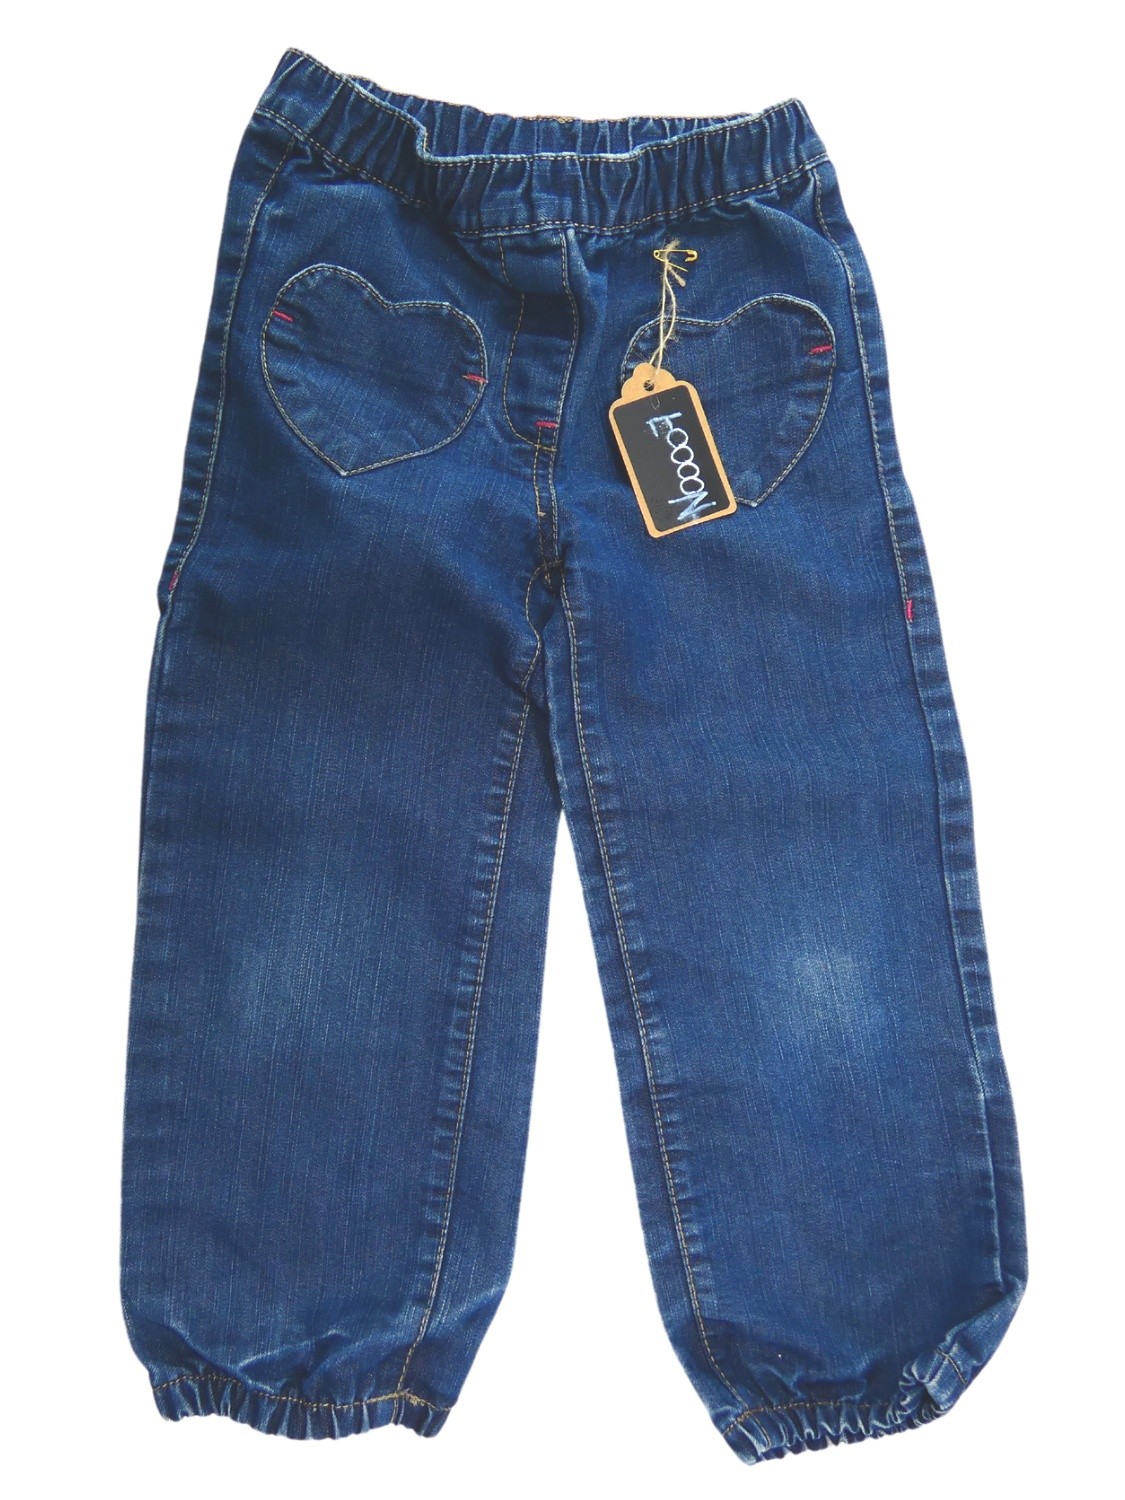 Pantalon jean poches cœur taille 36 mois